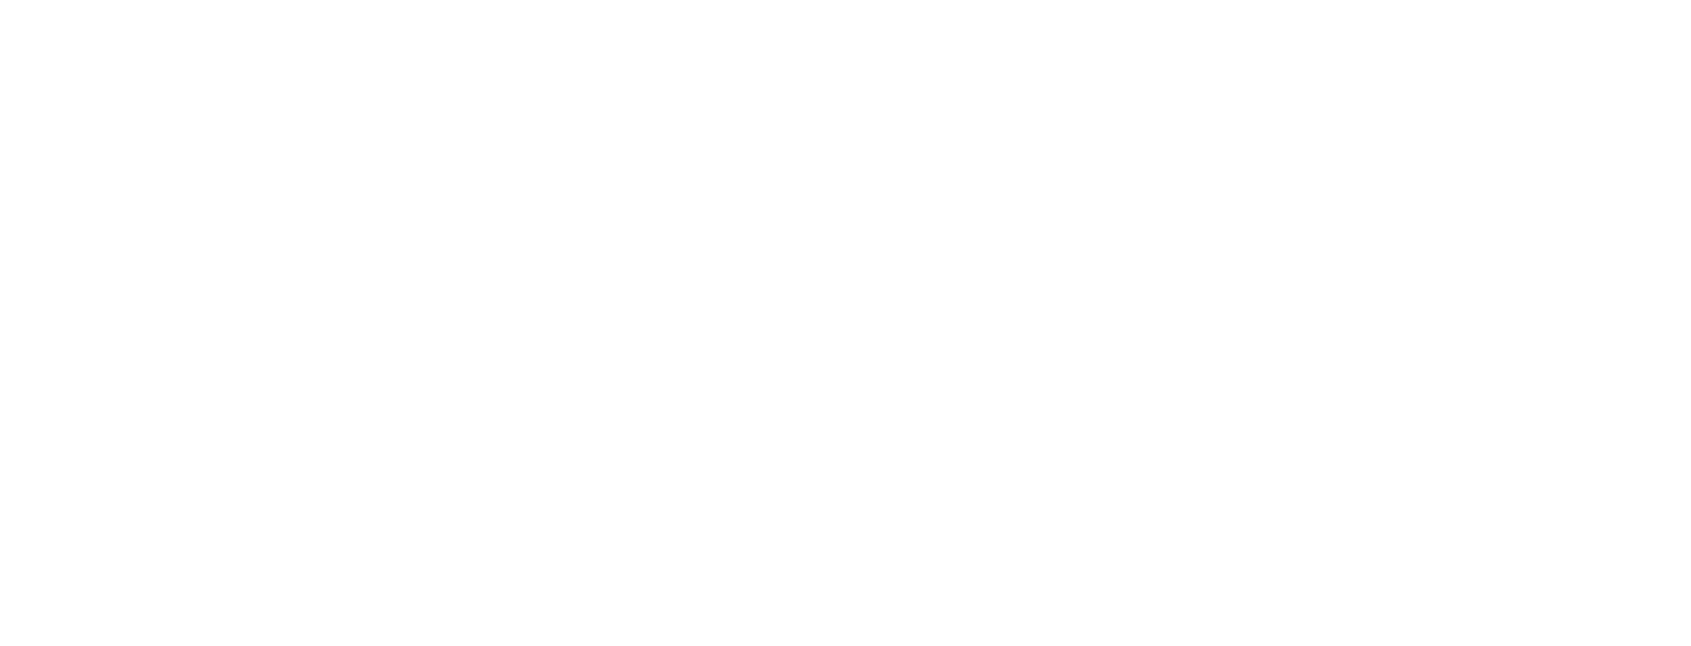 TASC Responds Logo